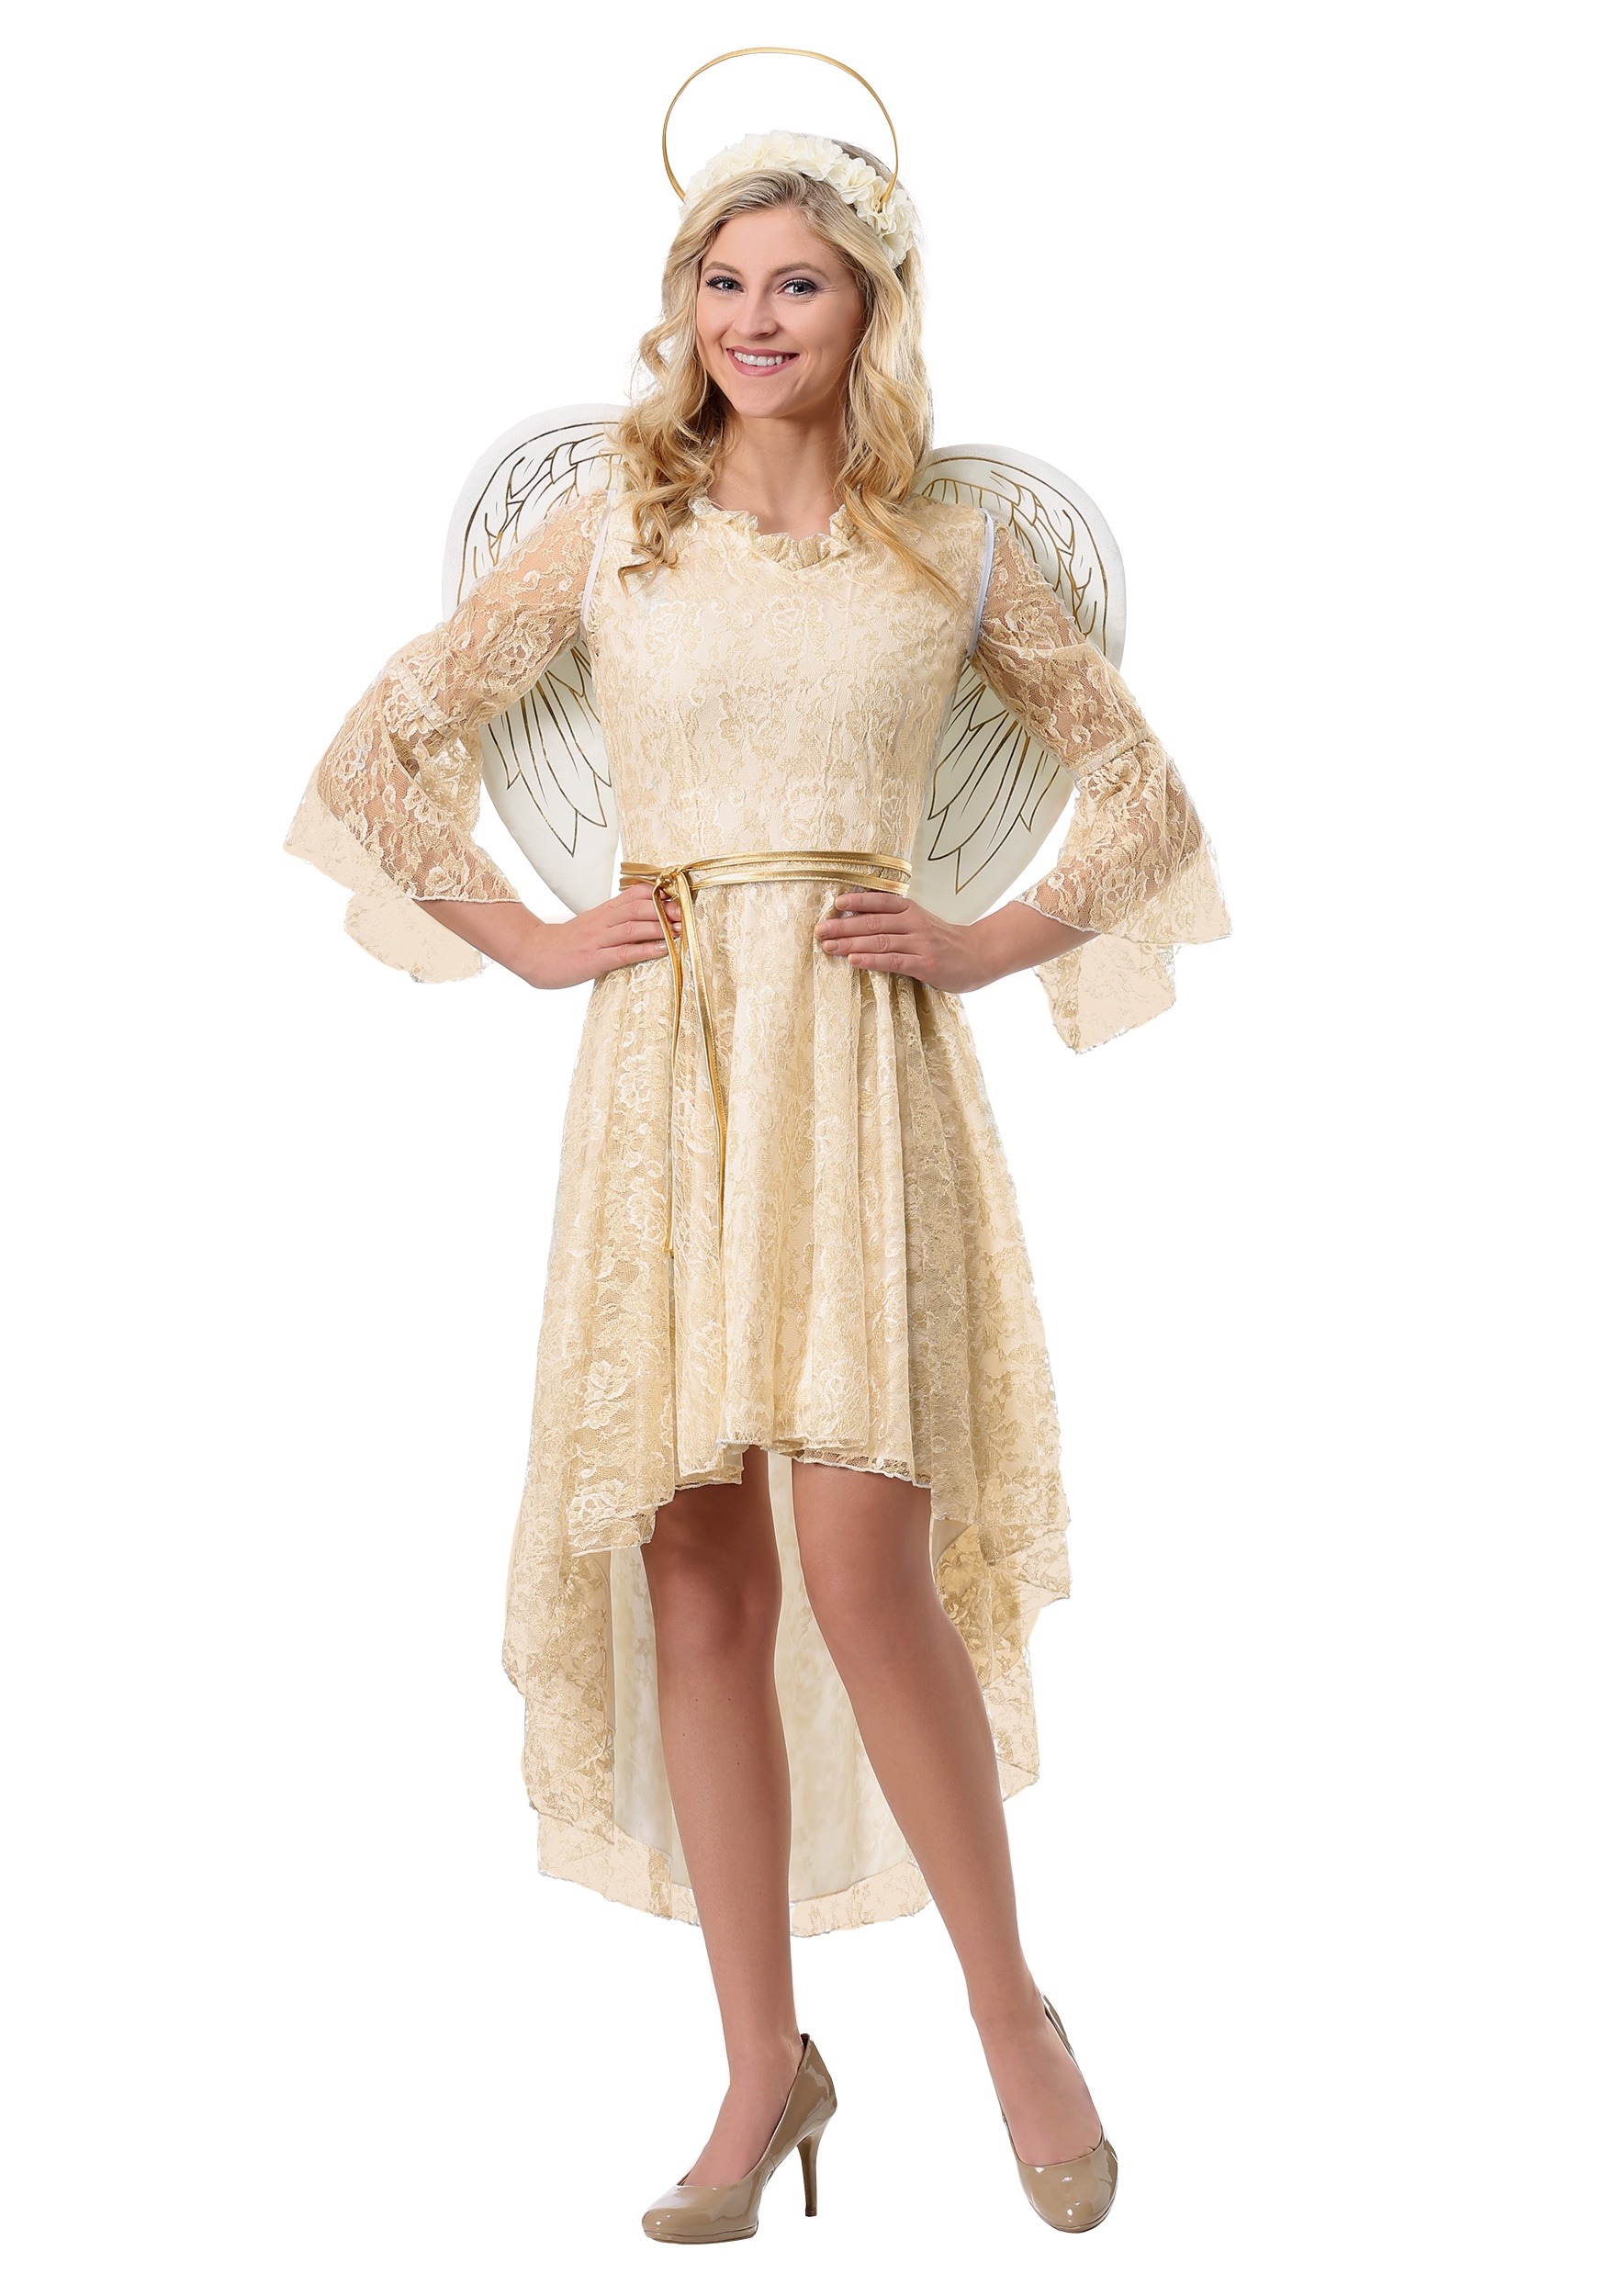 Lace Angel Fancy Dress Costume For Women